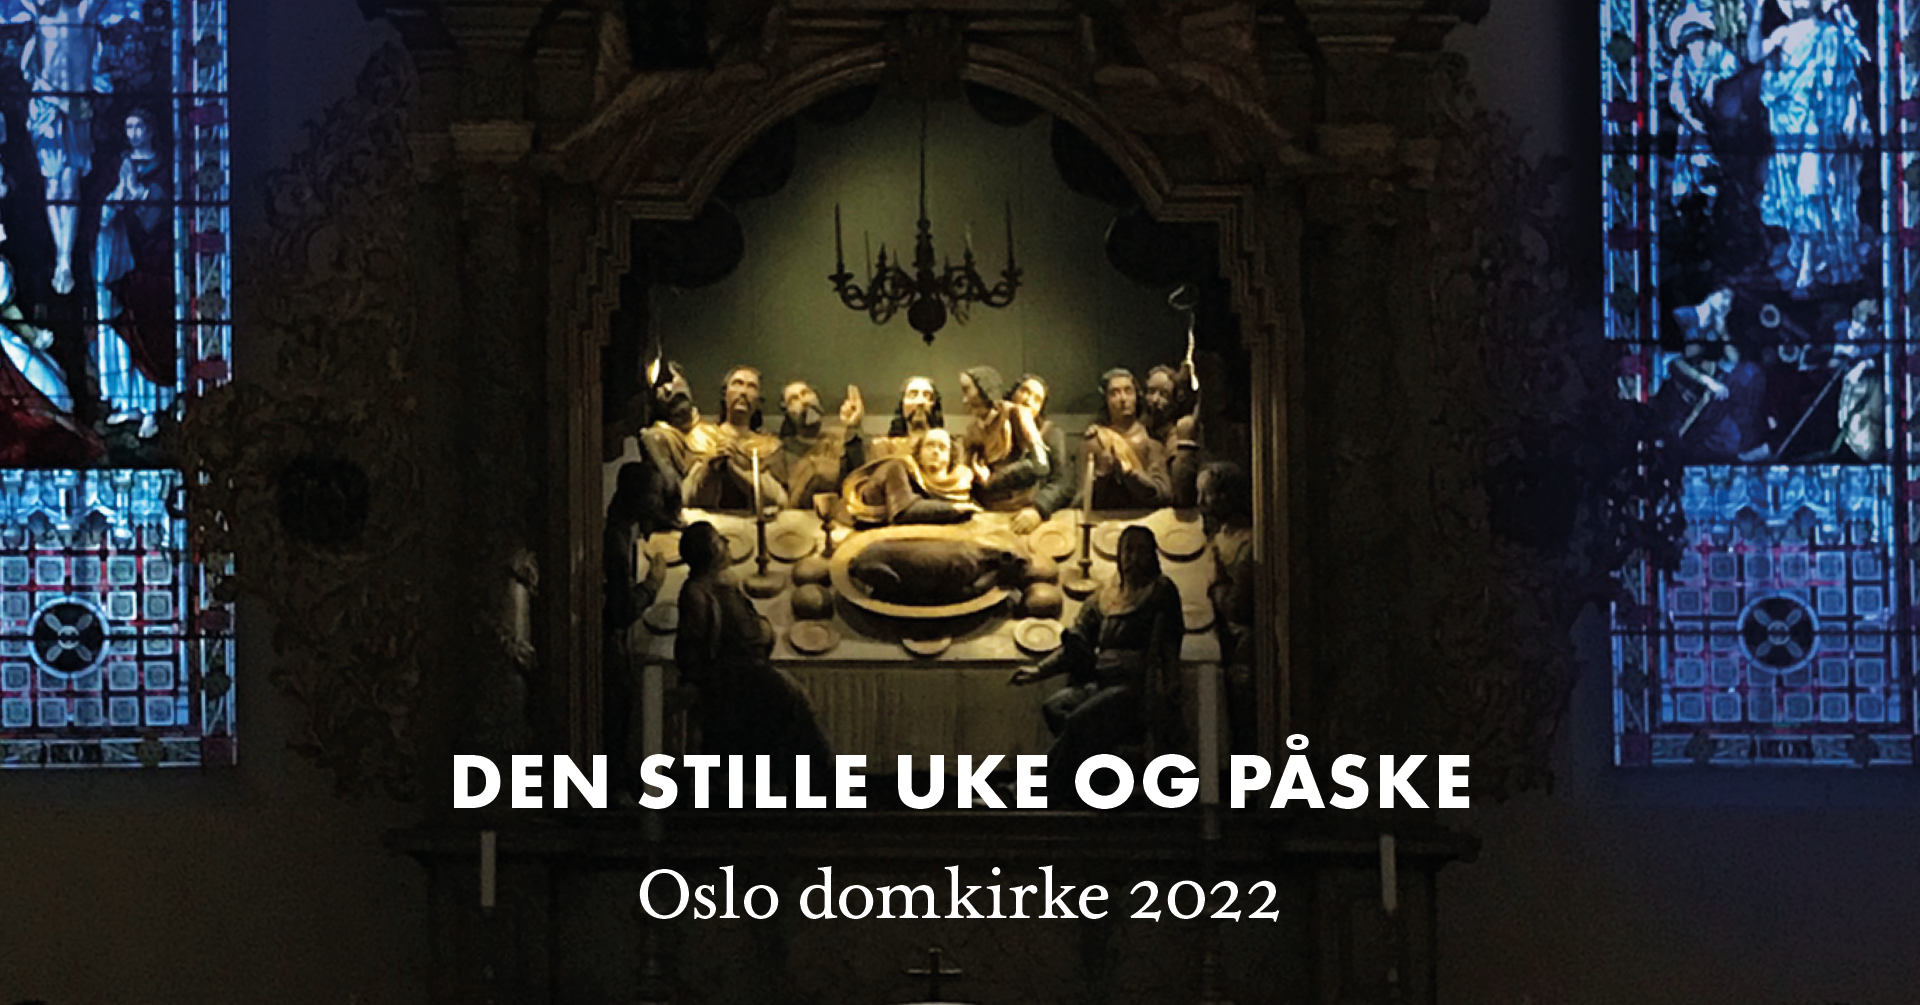 Den stille uke og påske i Oslo domkirke